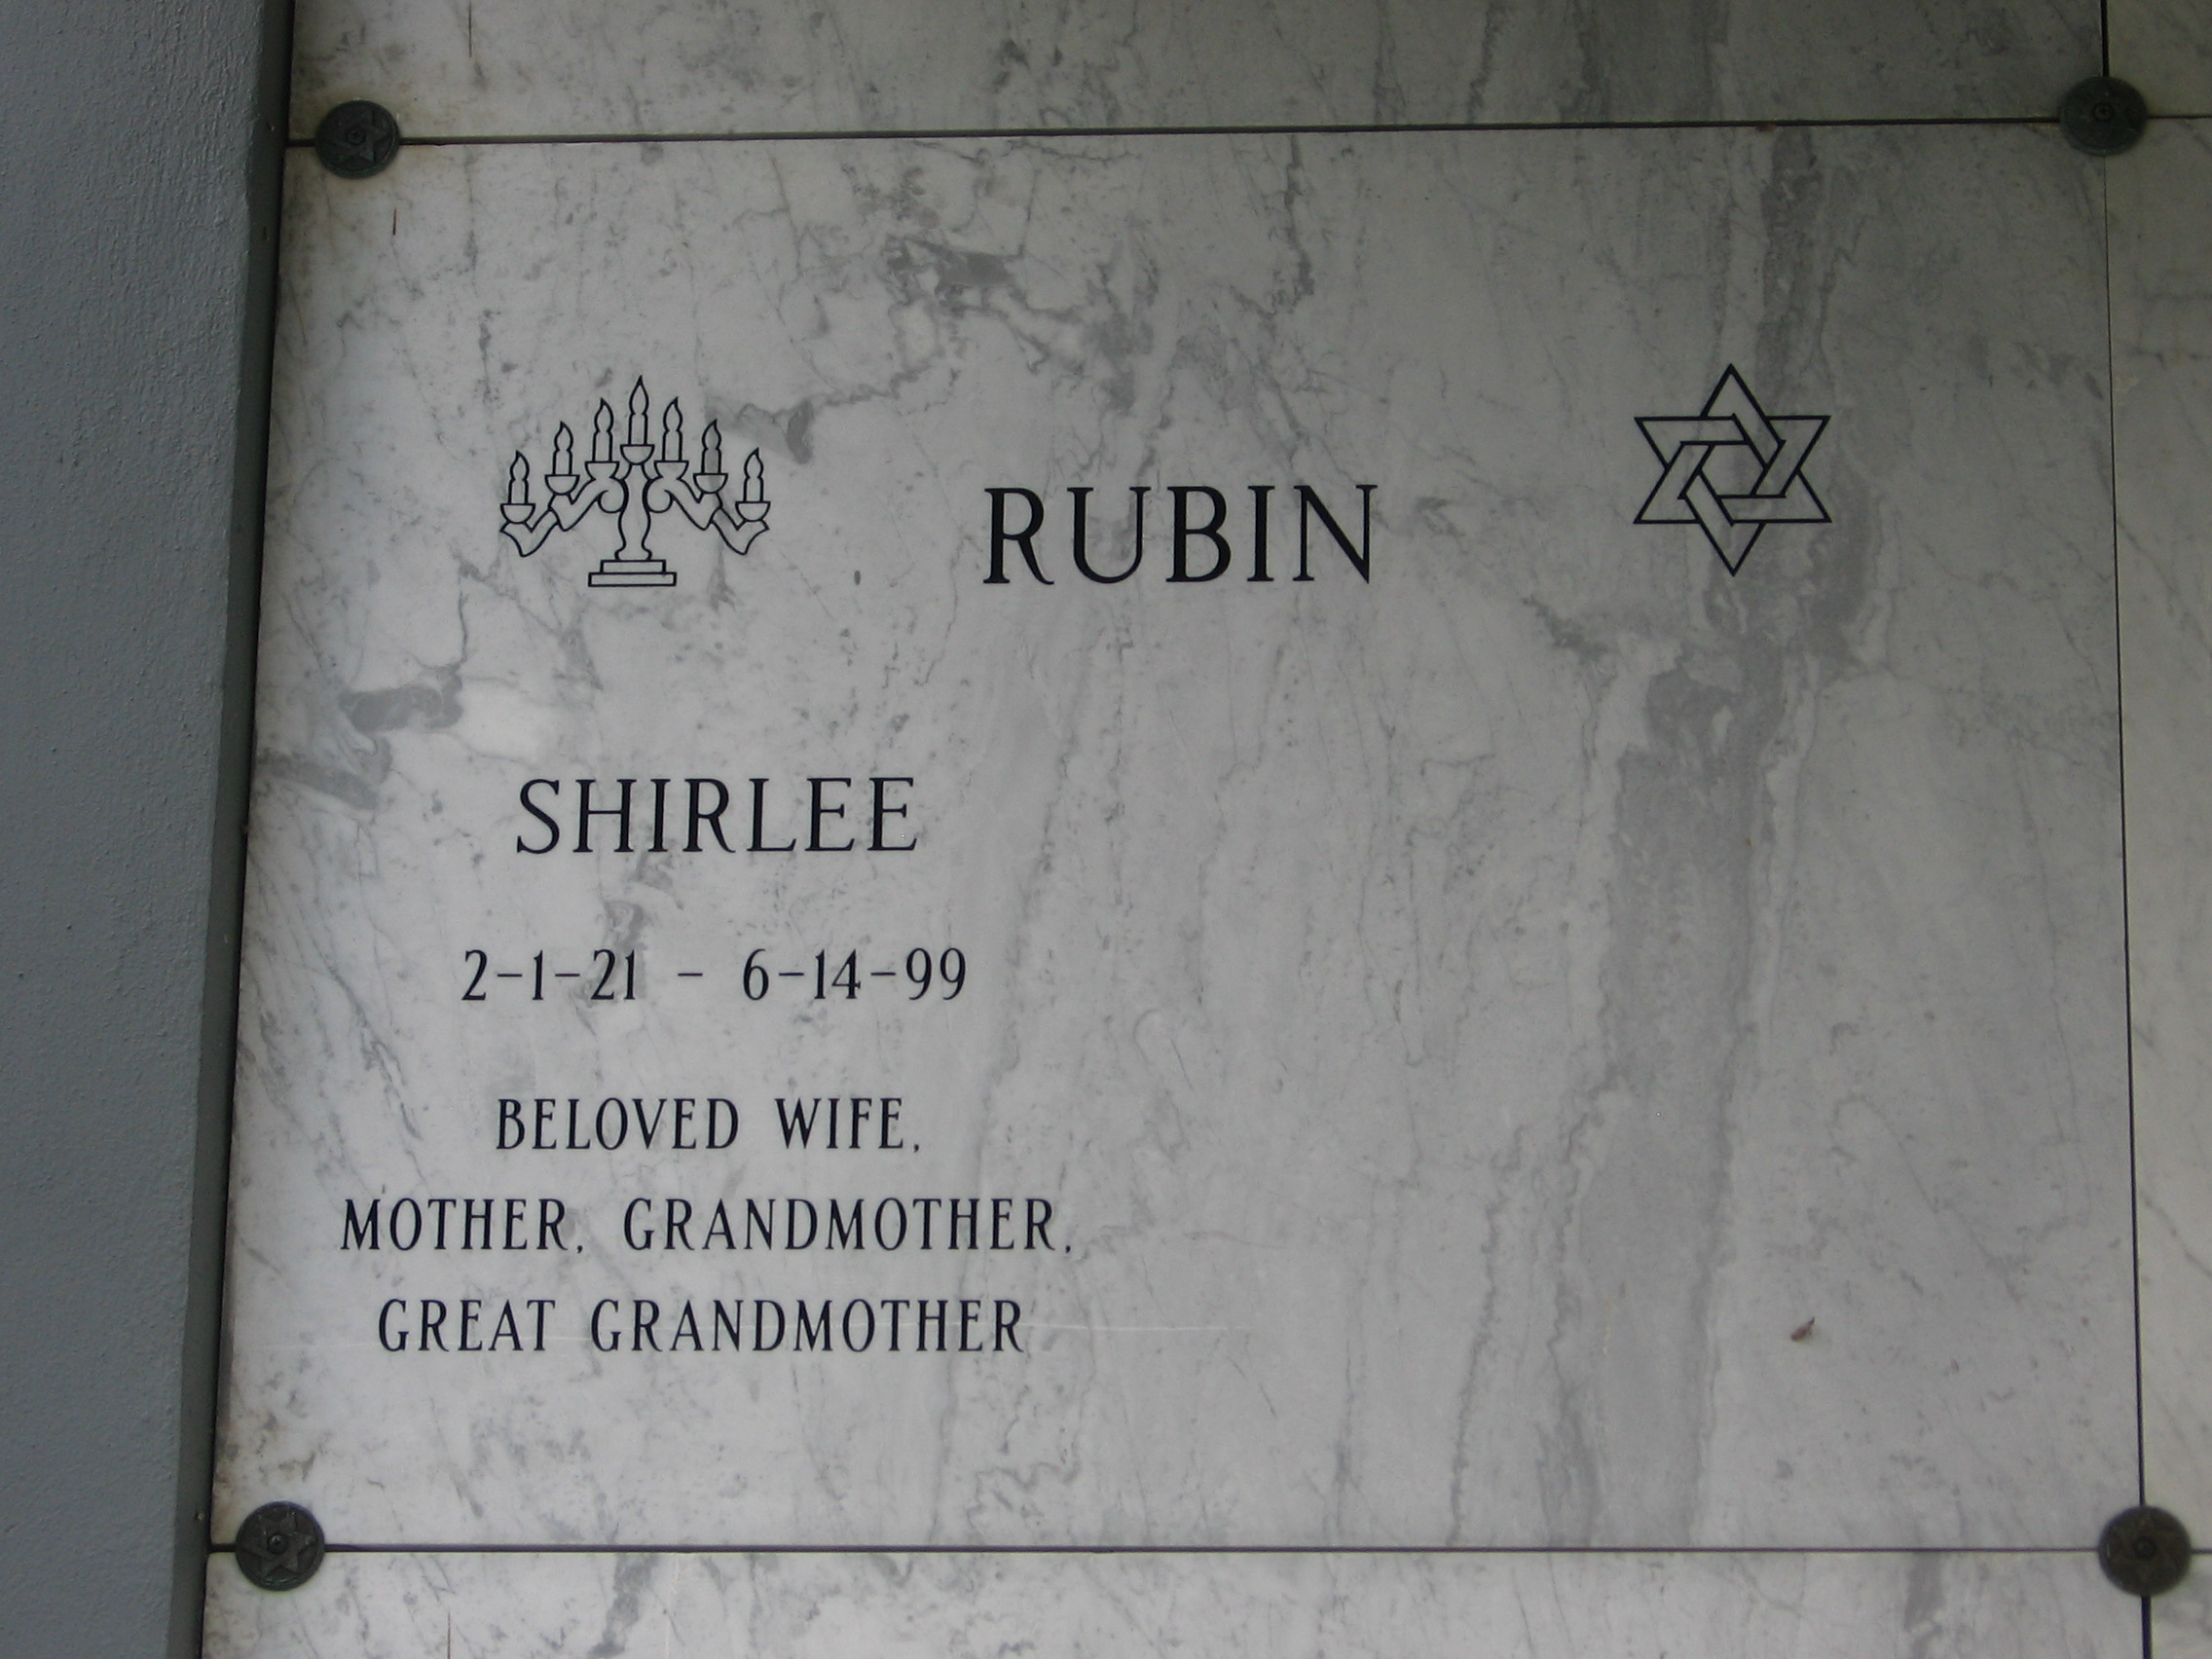 Shirlee Rubin